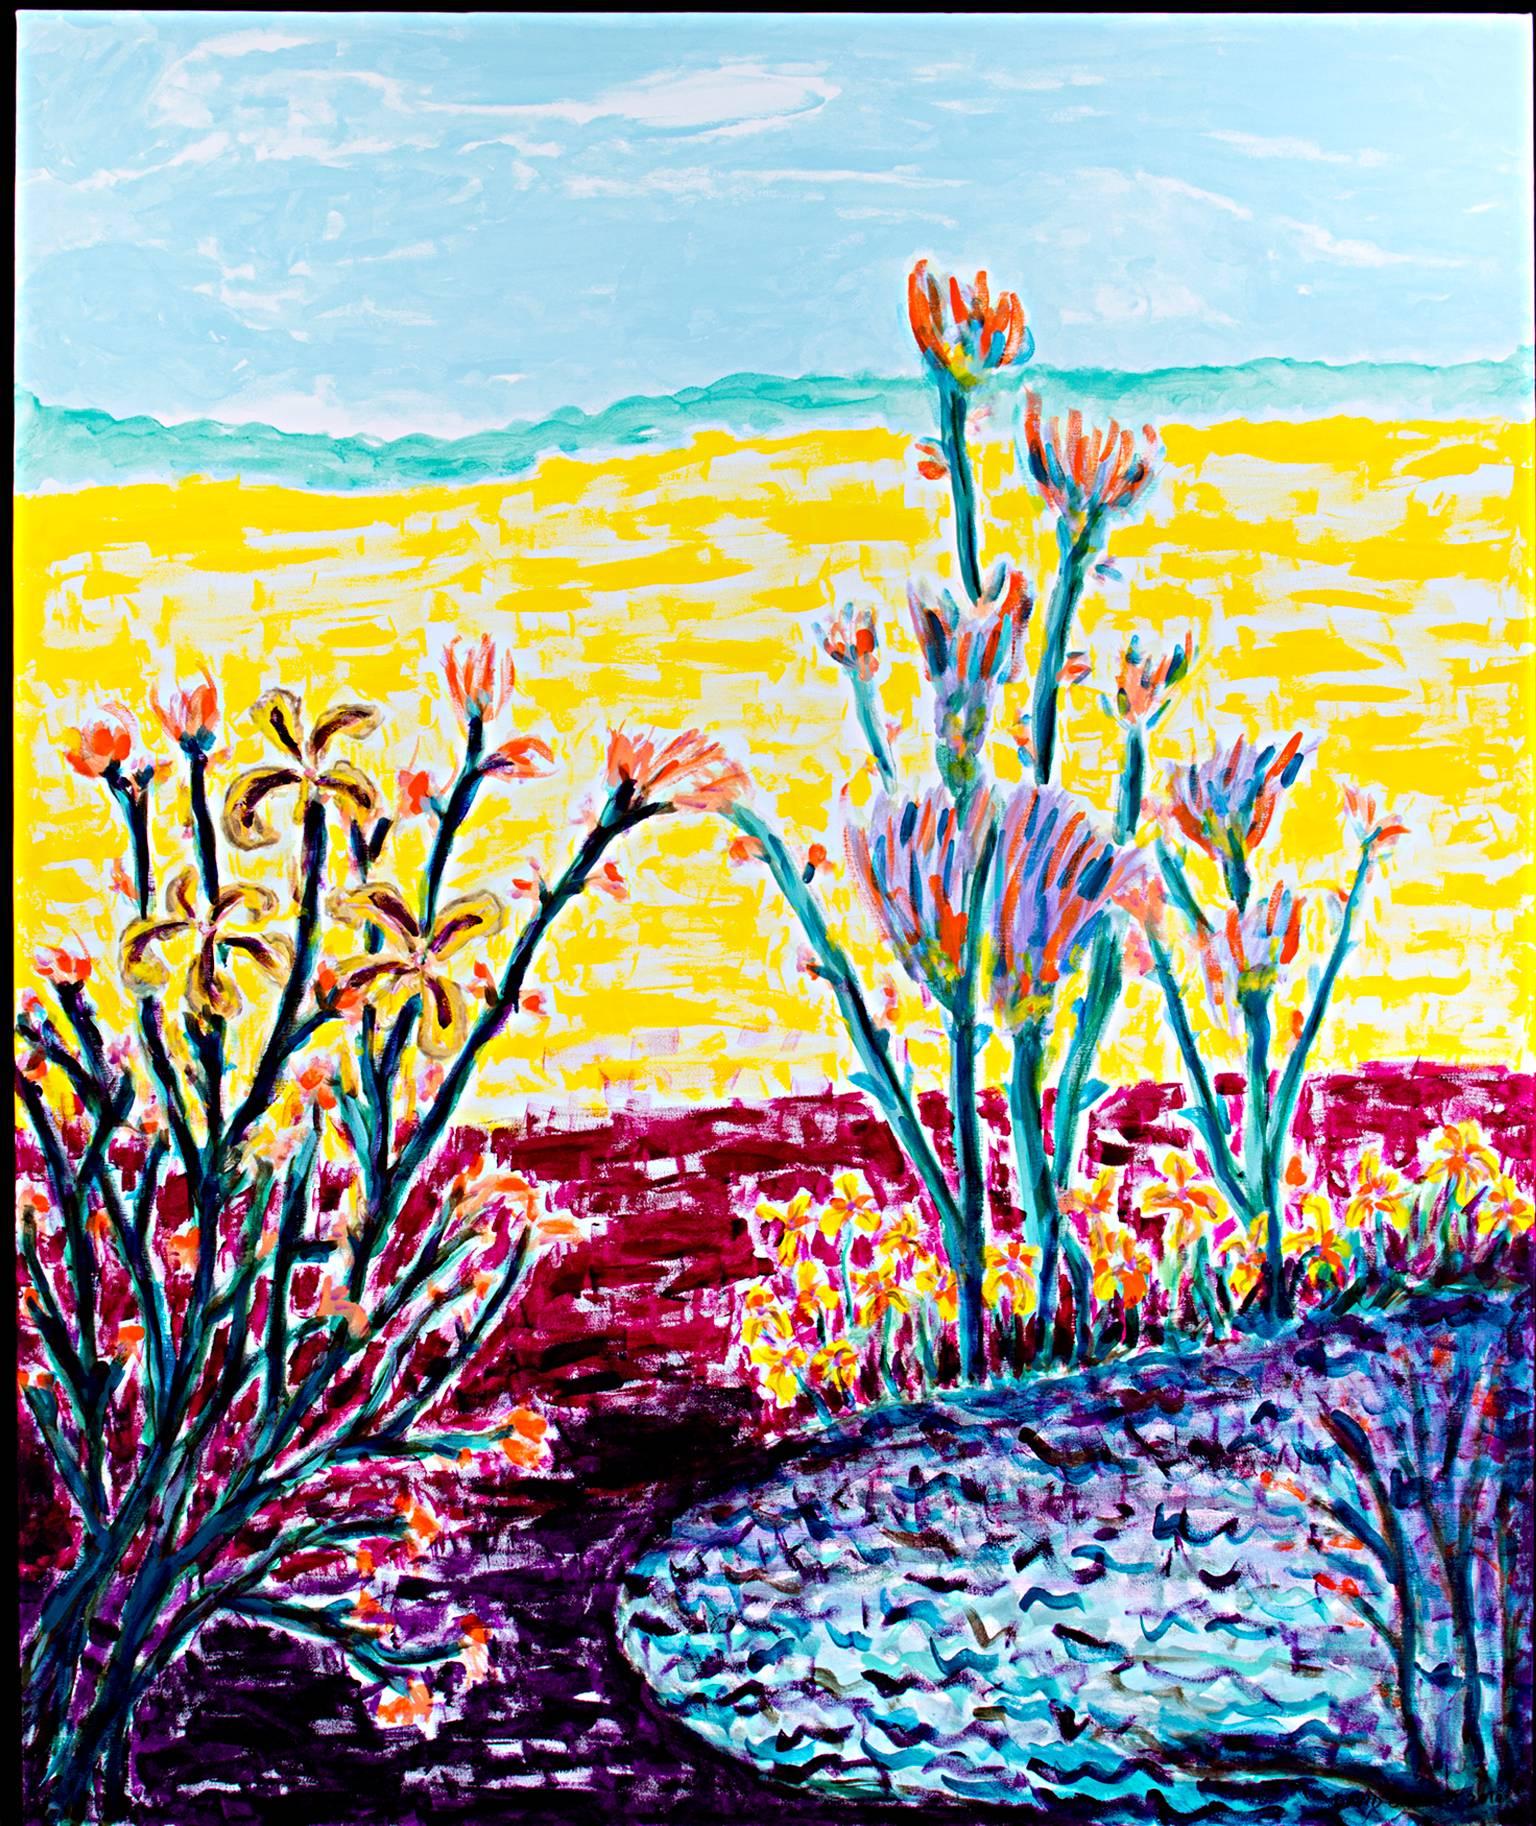 "Cranberry Bog & Golden Fields" est une peinture acrylique originale sur toile de David Barnett. Cette peinture présente un champ jaune vif derrière une tourbière rouge aux fleurs colorées. L'artiste a signé le tableau en bas à droite. 

60" x 48"